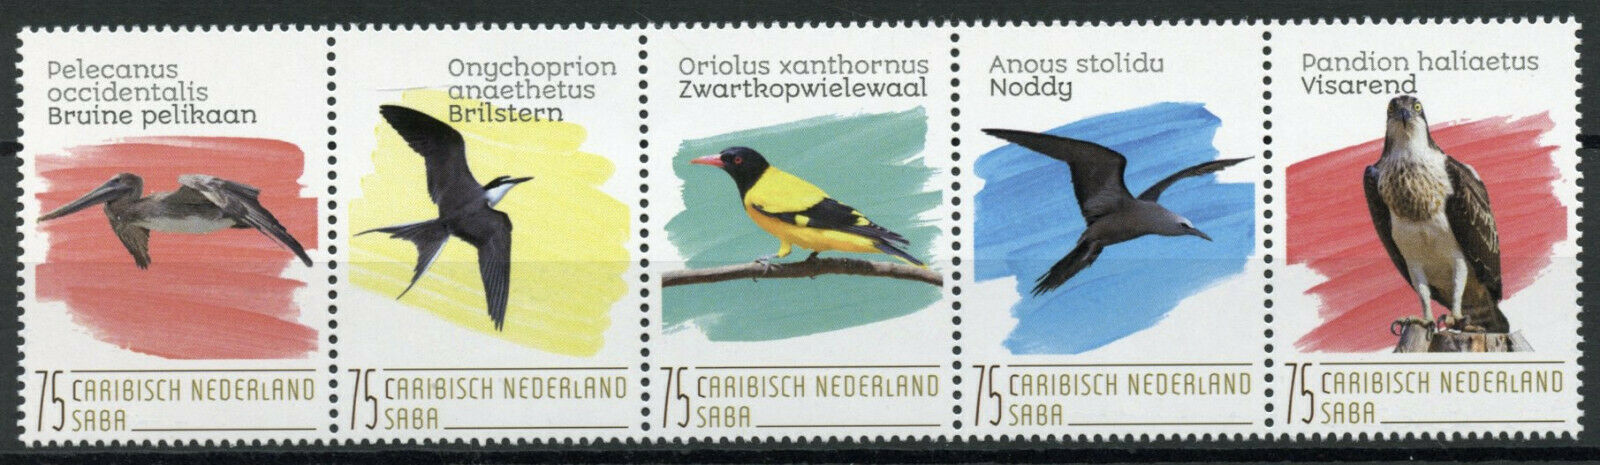 Saba Caribbean Netherlands Birds on Stamps 2020 MNH Orioles Pelicans 5v Strip